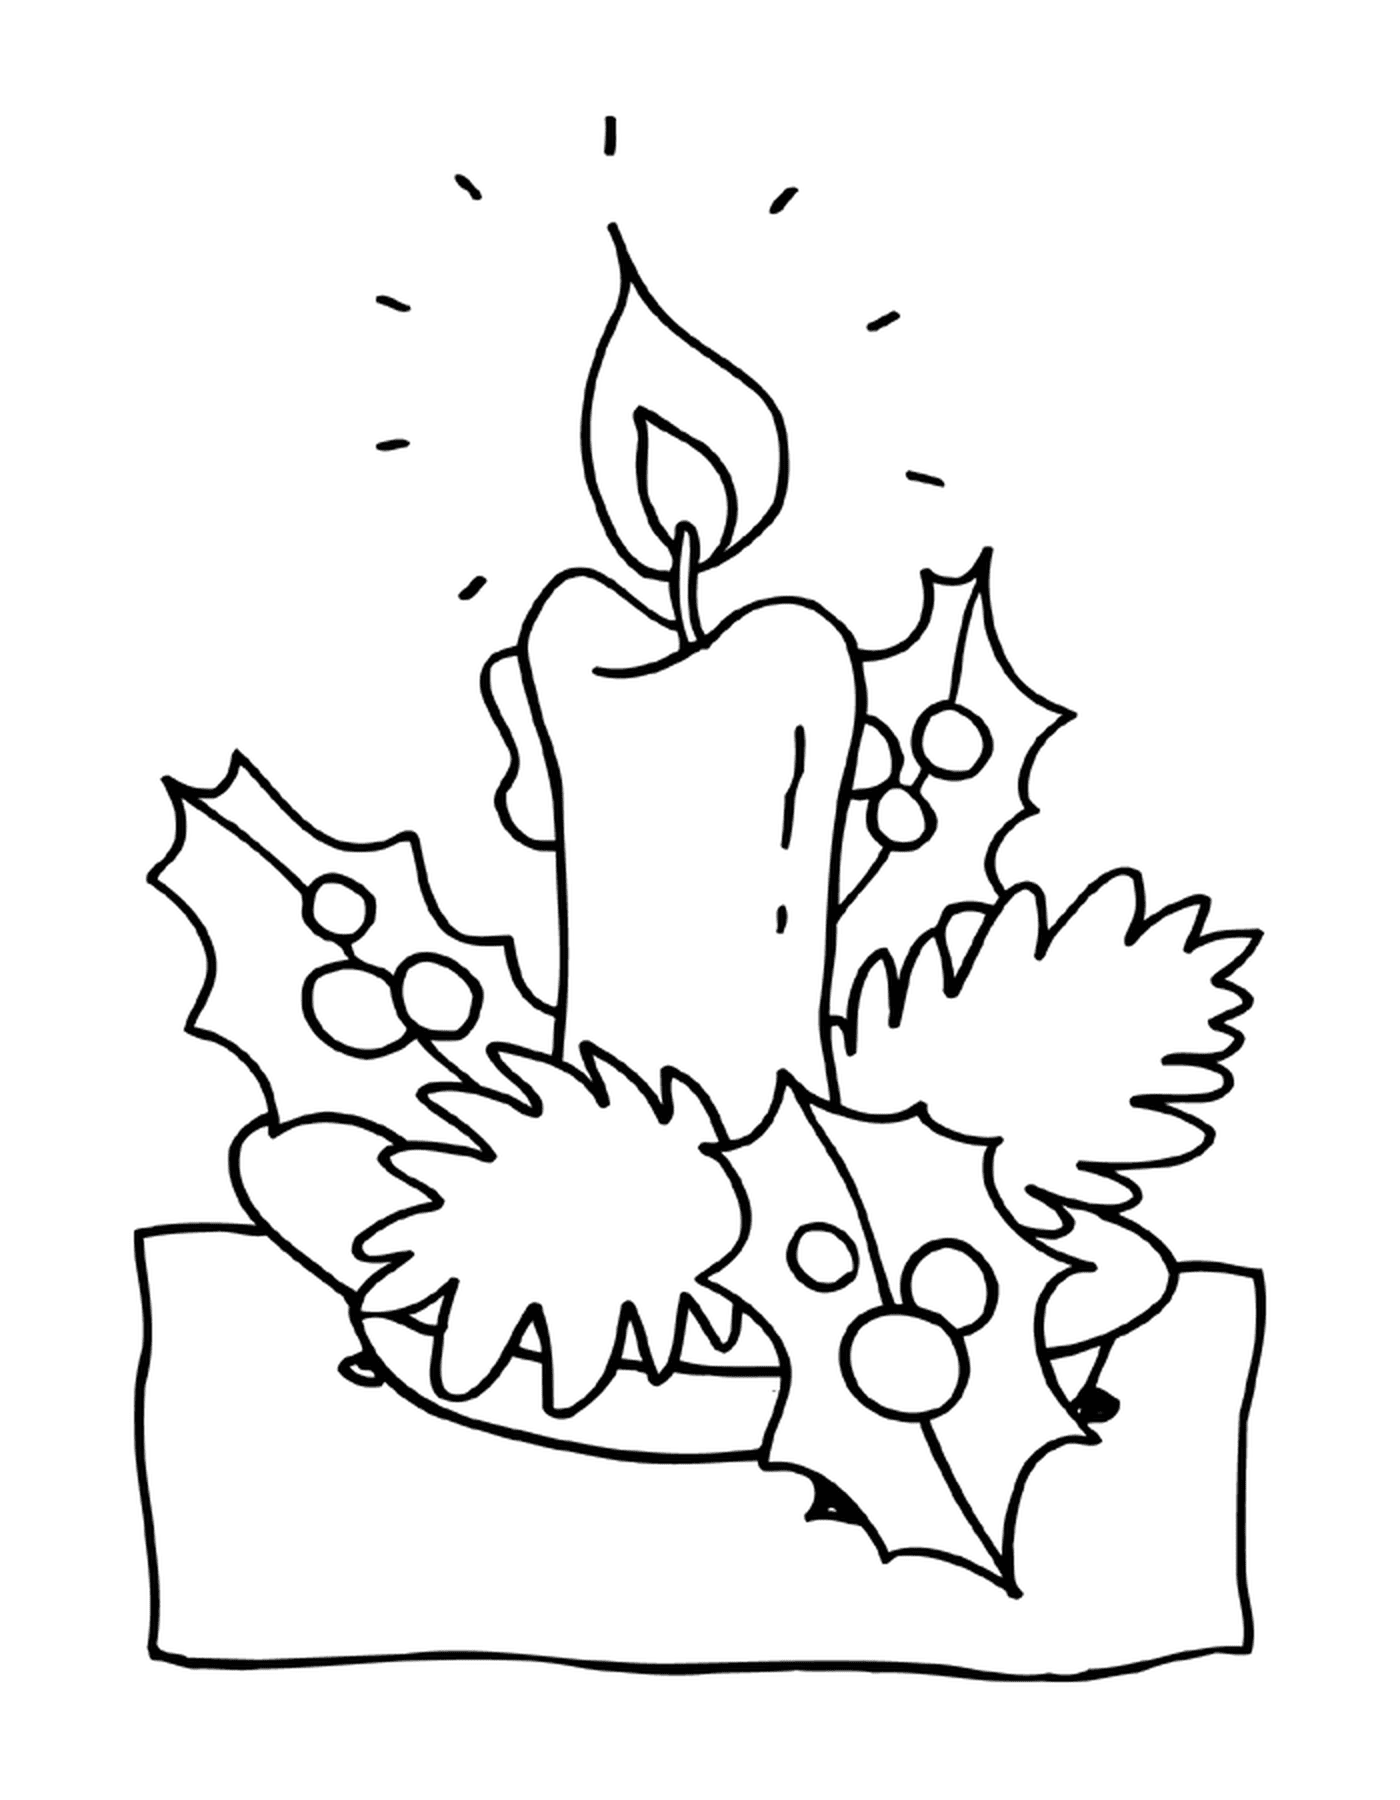  Una vela 